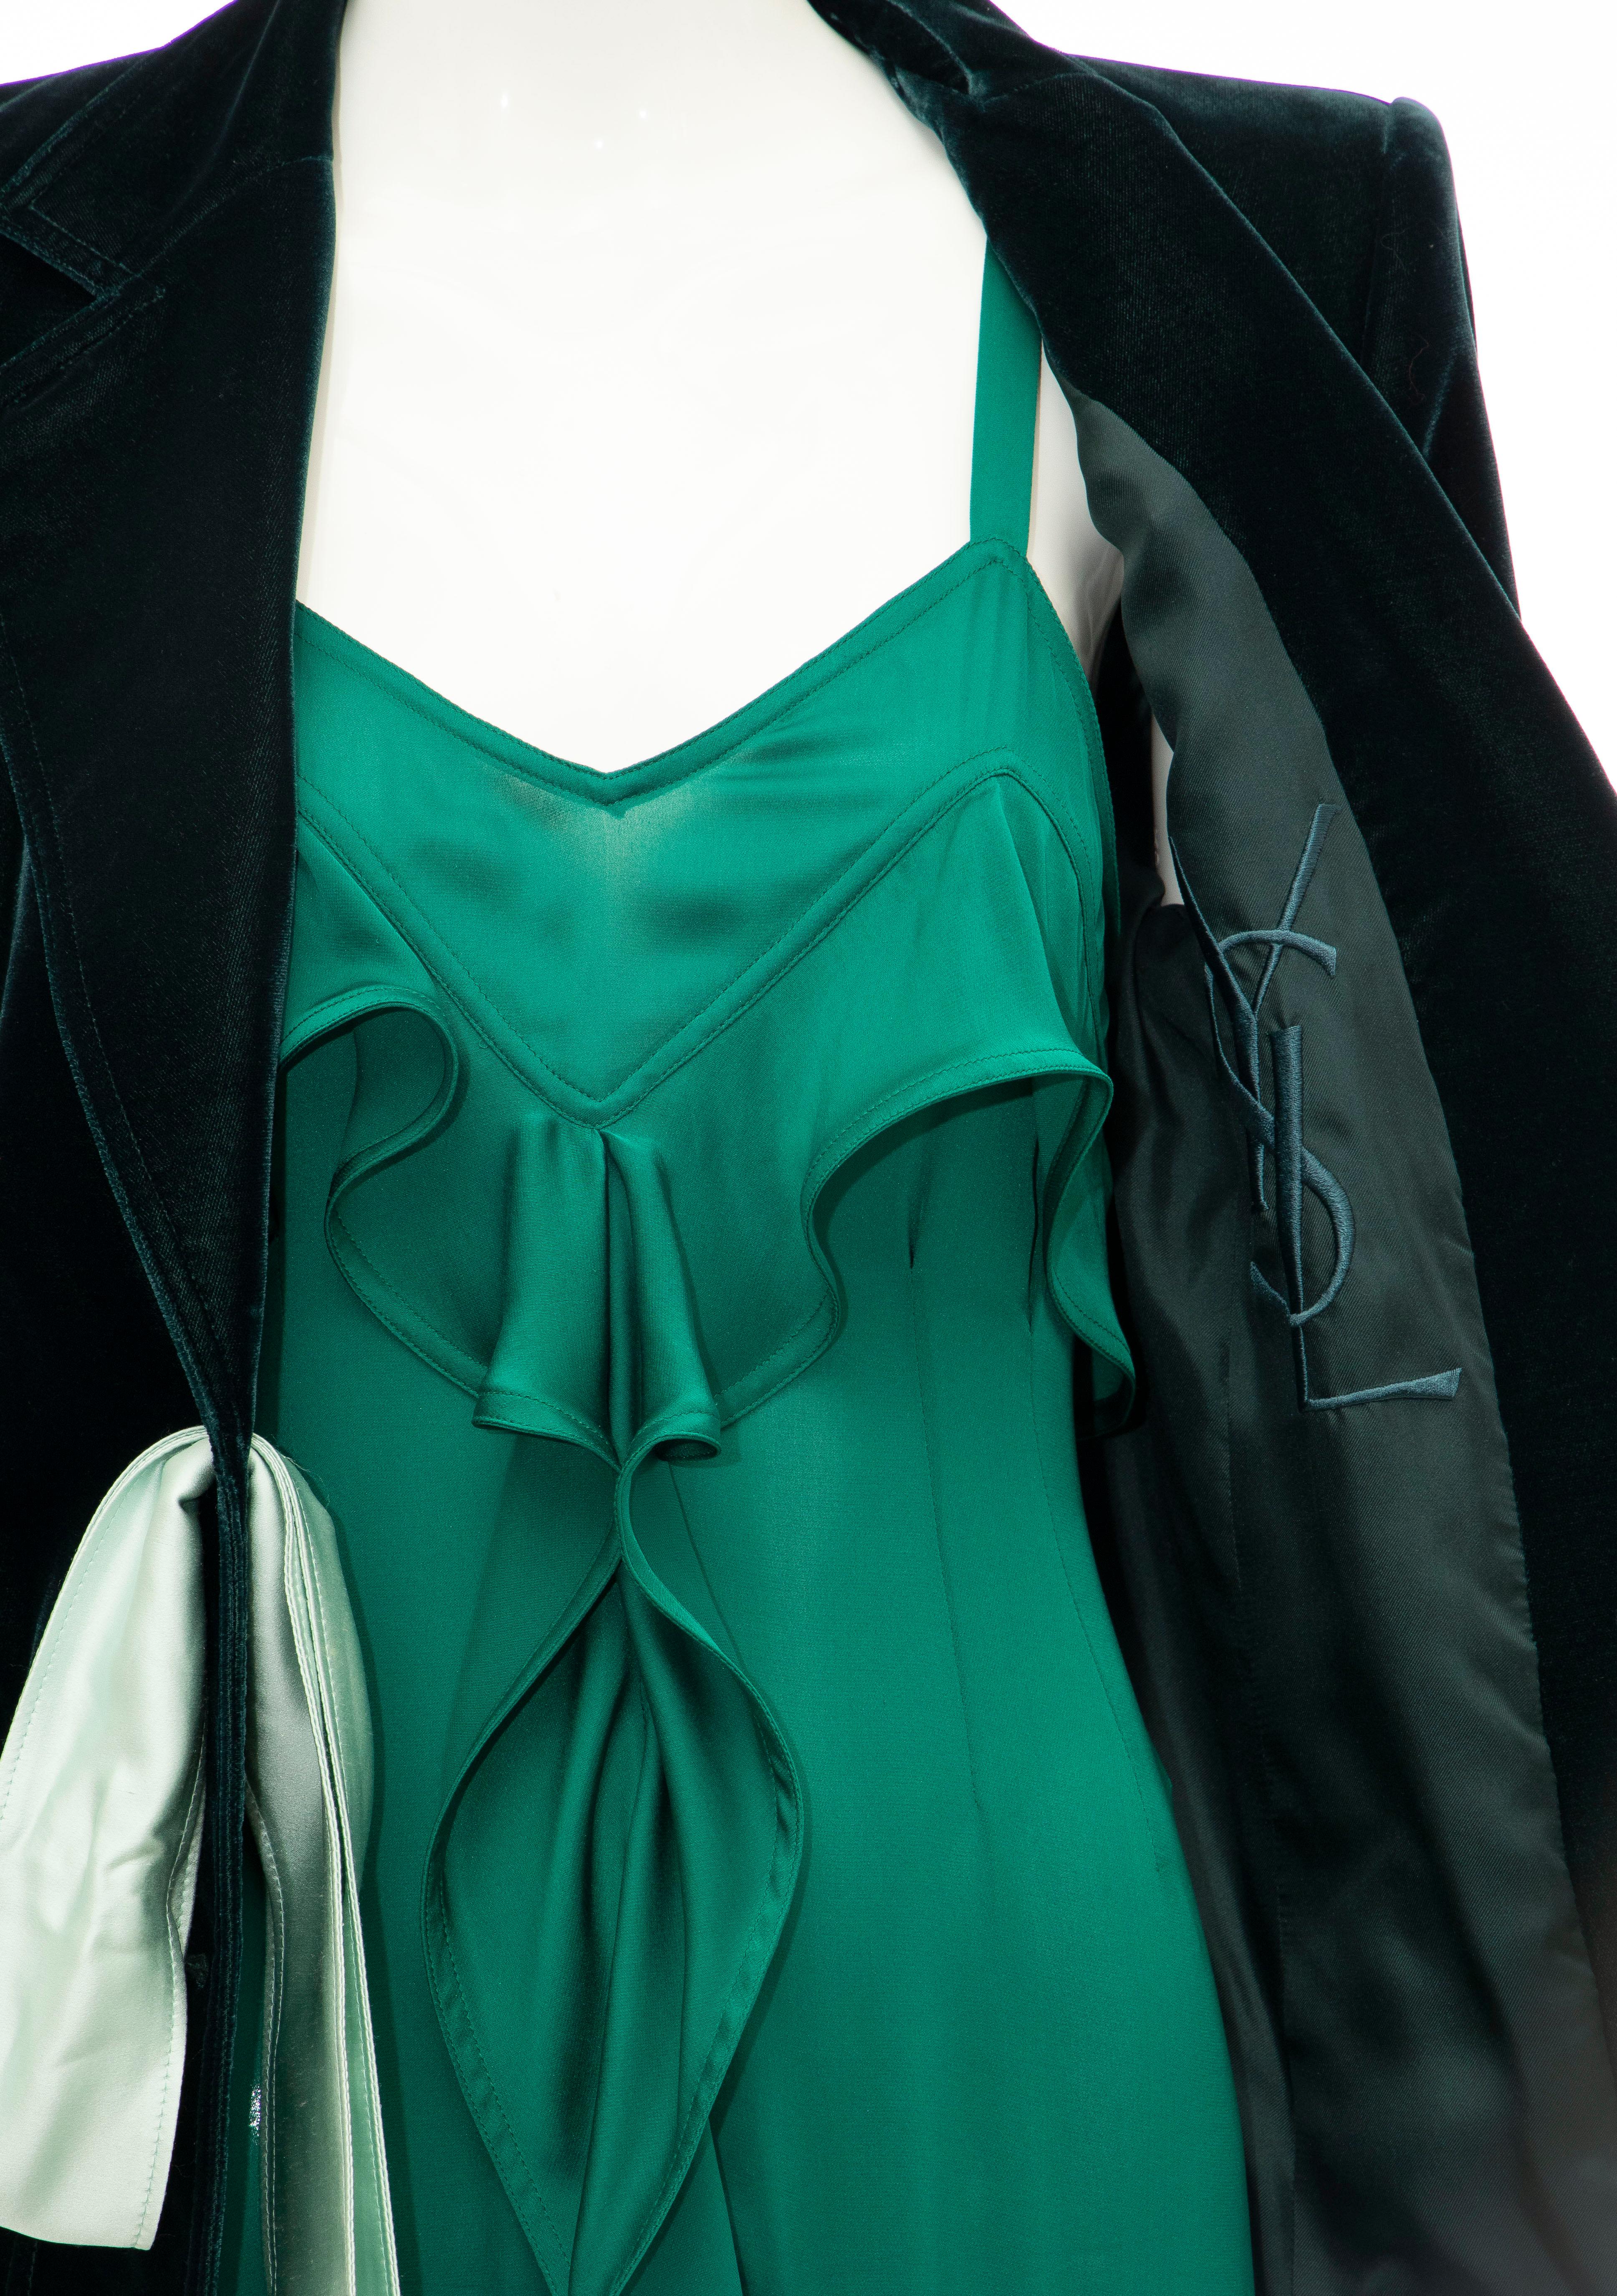 Tom Ford for Yves Saint Laurent Emerald Green Velvet Silk Dress Suit,  Fall 2003 7